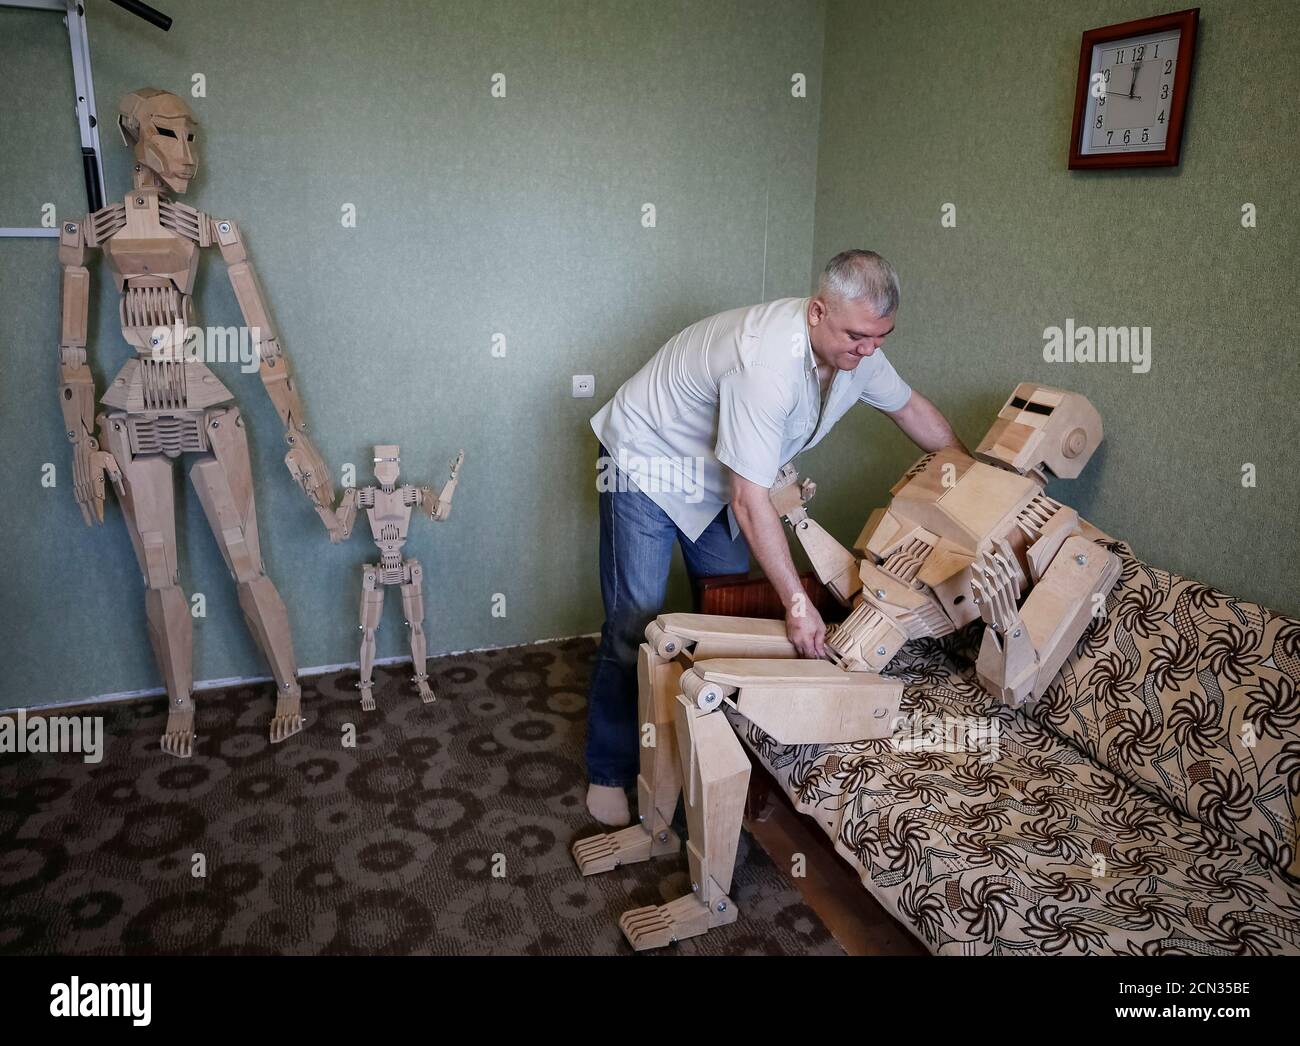 Dmitry Balandin ist mit seinen Holzmodellen Centurion (R), Amazon (L) und  Kid in seiner Wohnung in Zaporizhzhya, Ukraine, Ukraine, 5. Juli 2017  abgebildet. Balandin, der als Kranführer arbeitet, brauchte achtzehn  Monate, um